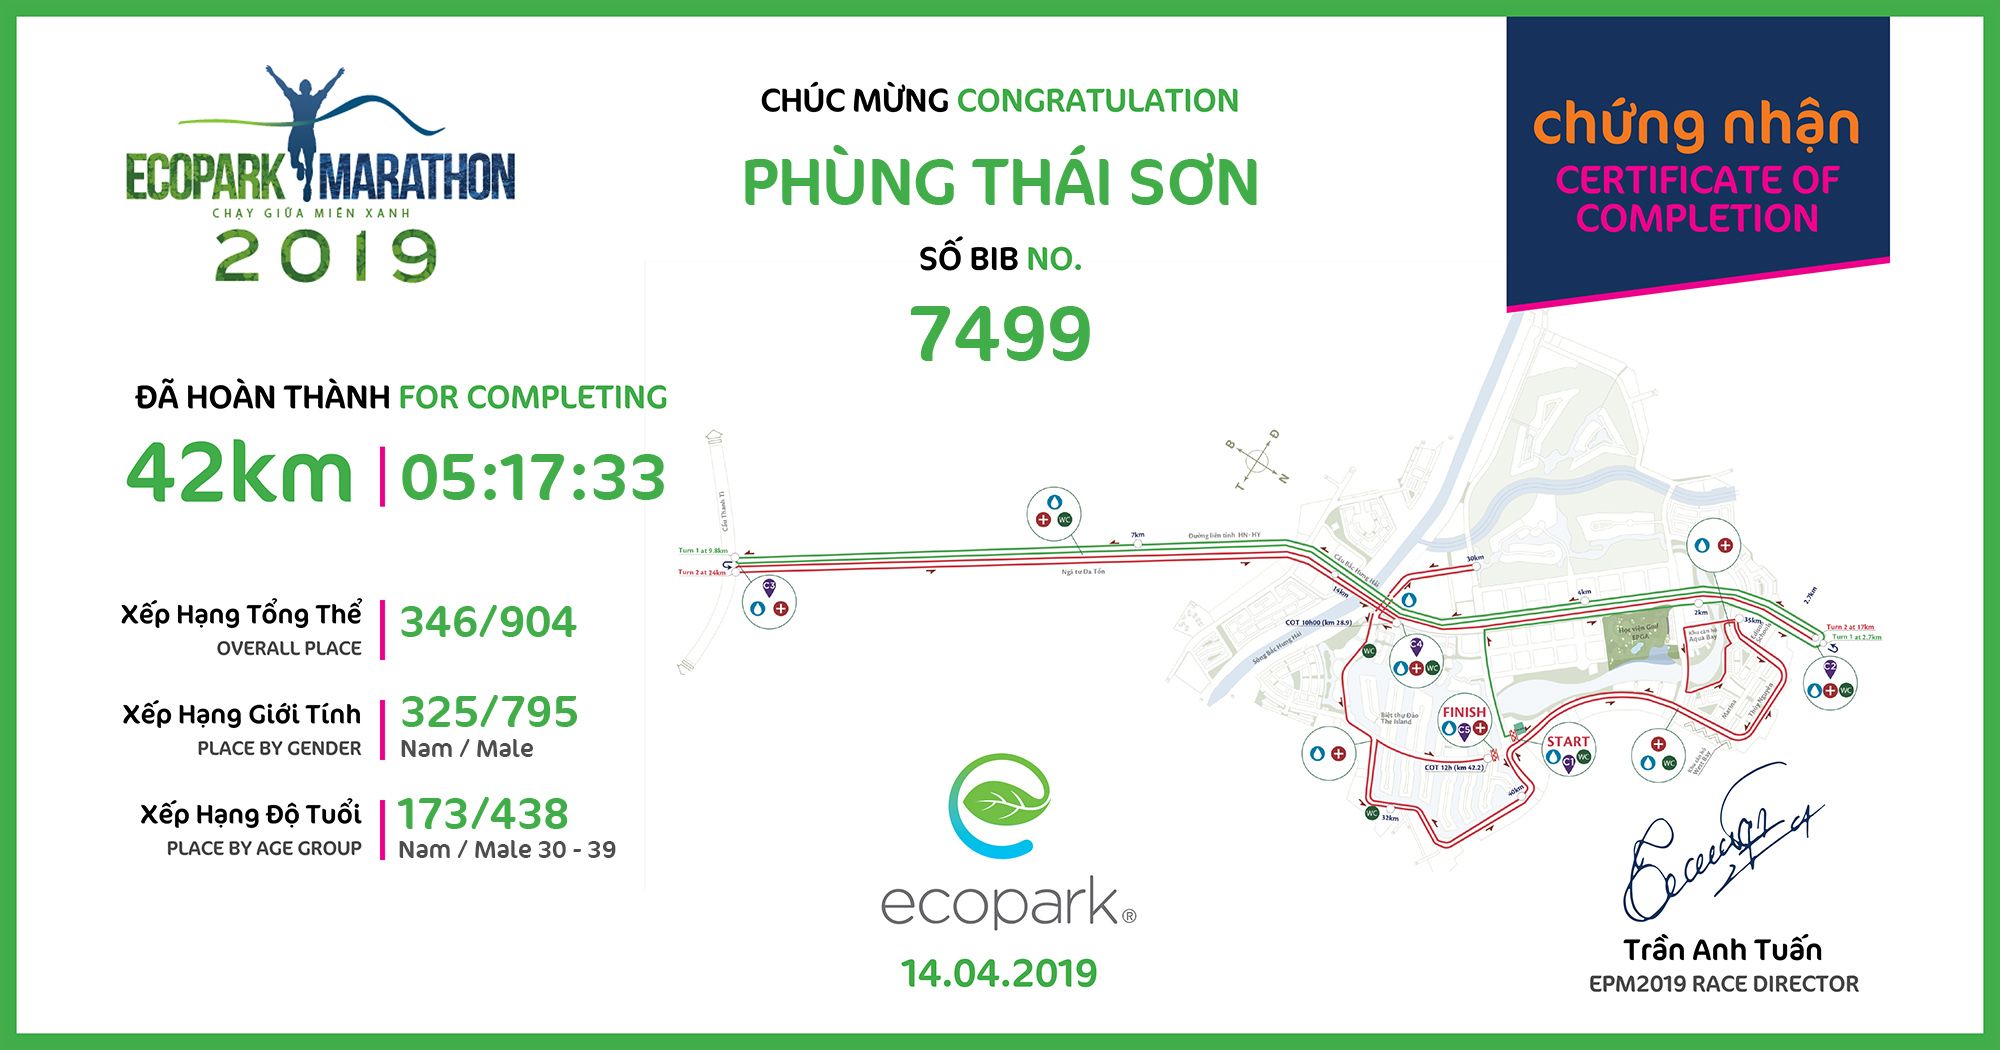 7499 - Phùng Thái Sơn